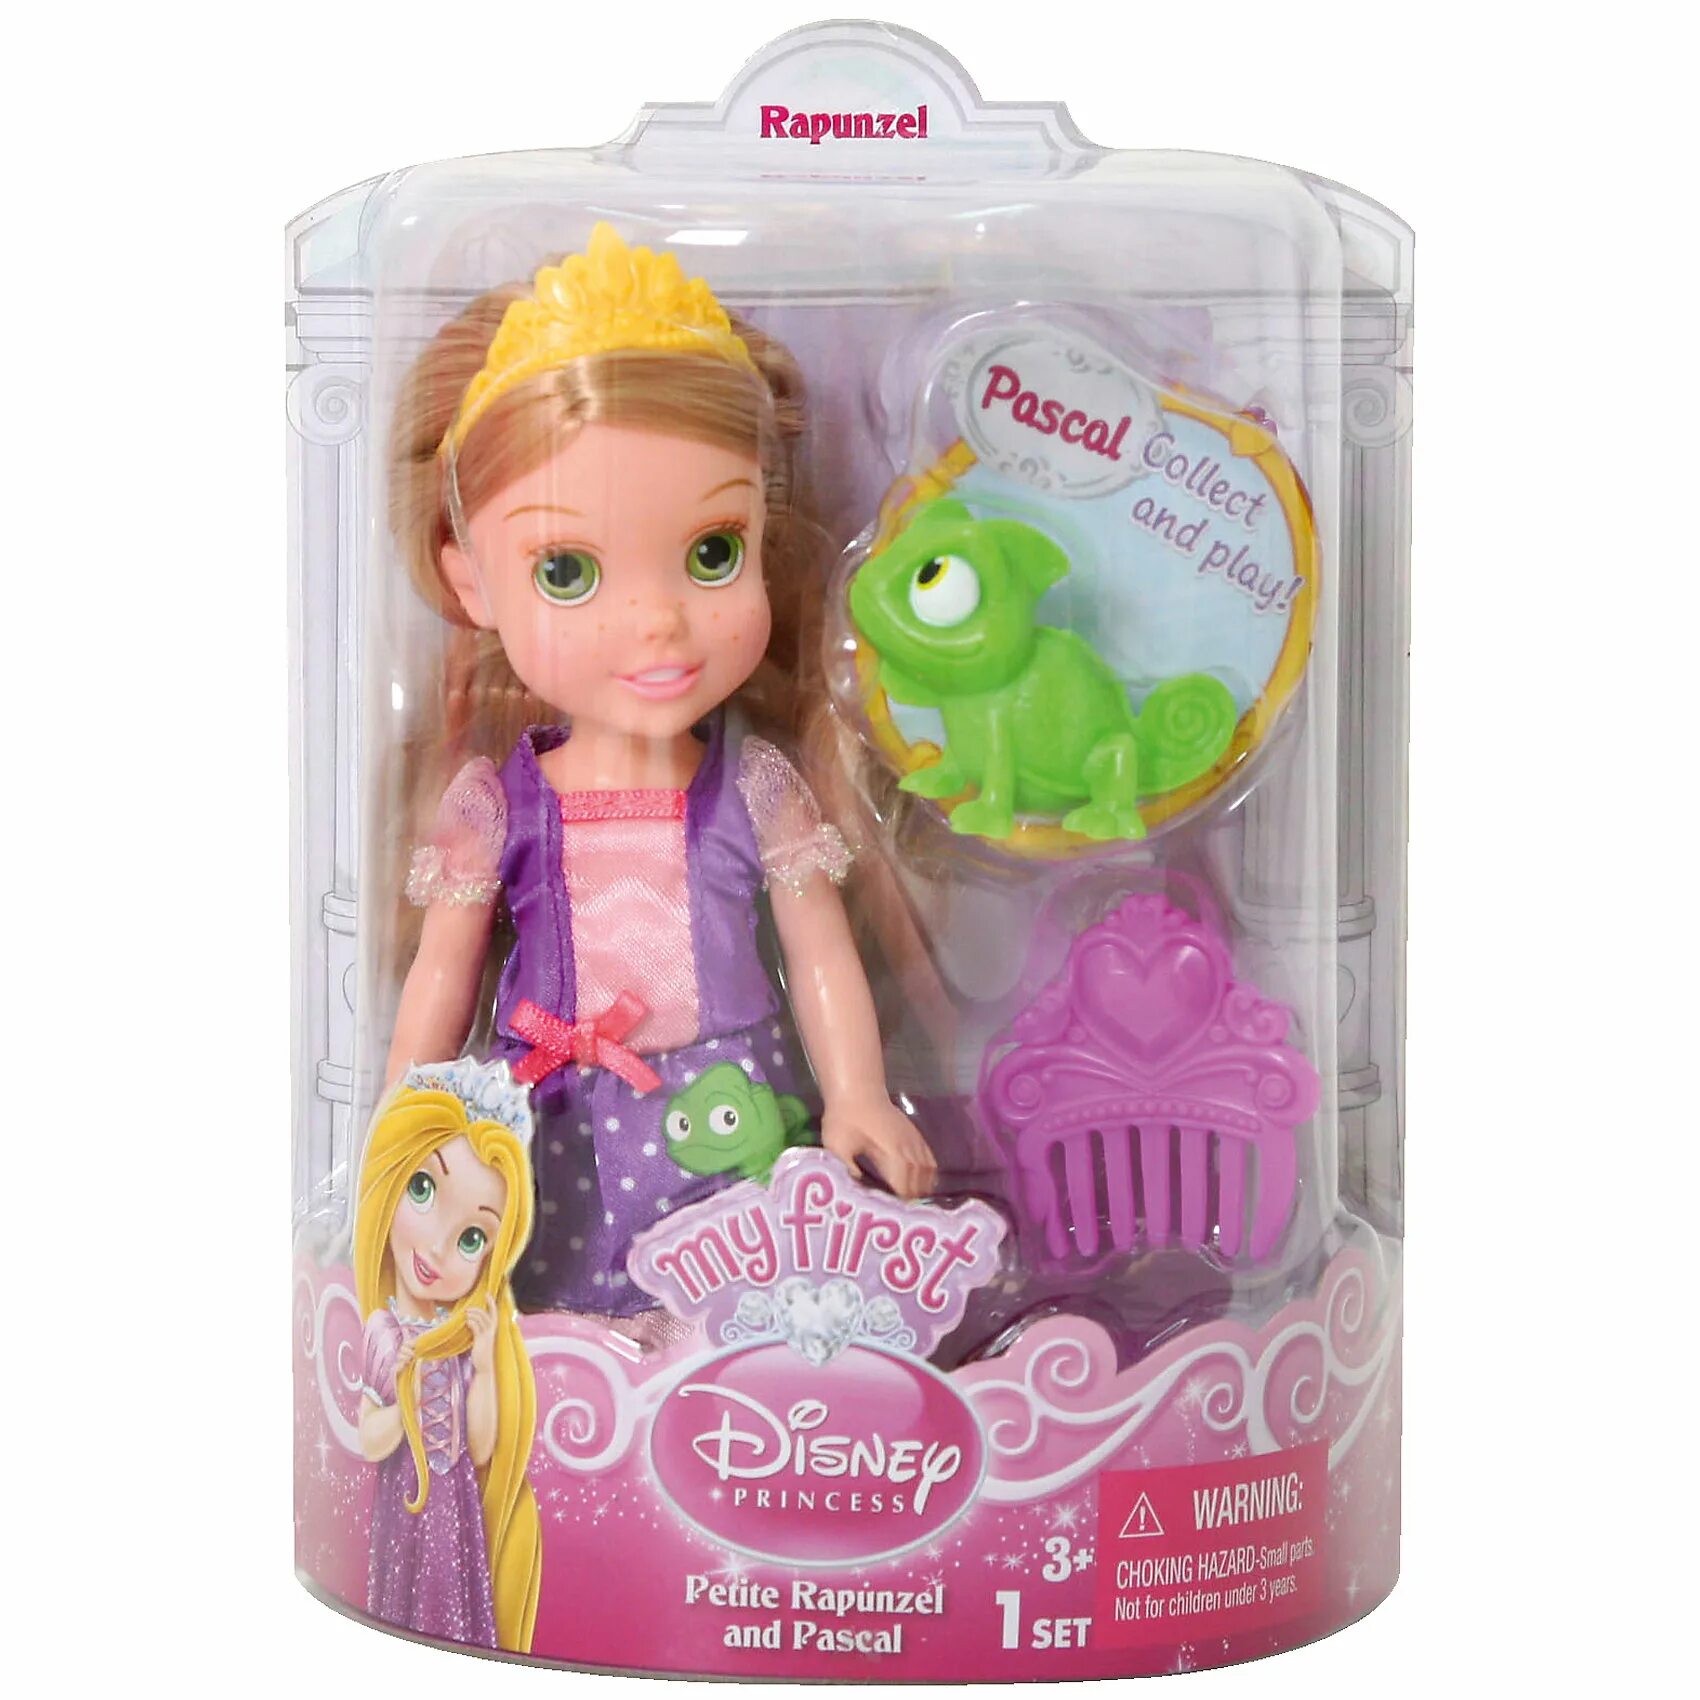 Принцесса малышка s класса. Disney кукла принцесса, 15 см. Куклы принцессы Дисней 15 см. Кукла принцесса малышка Рапунцель. Малютка Рапунцель Дисней кукла.